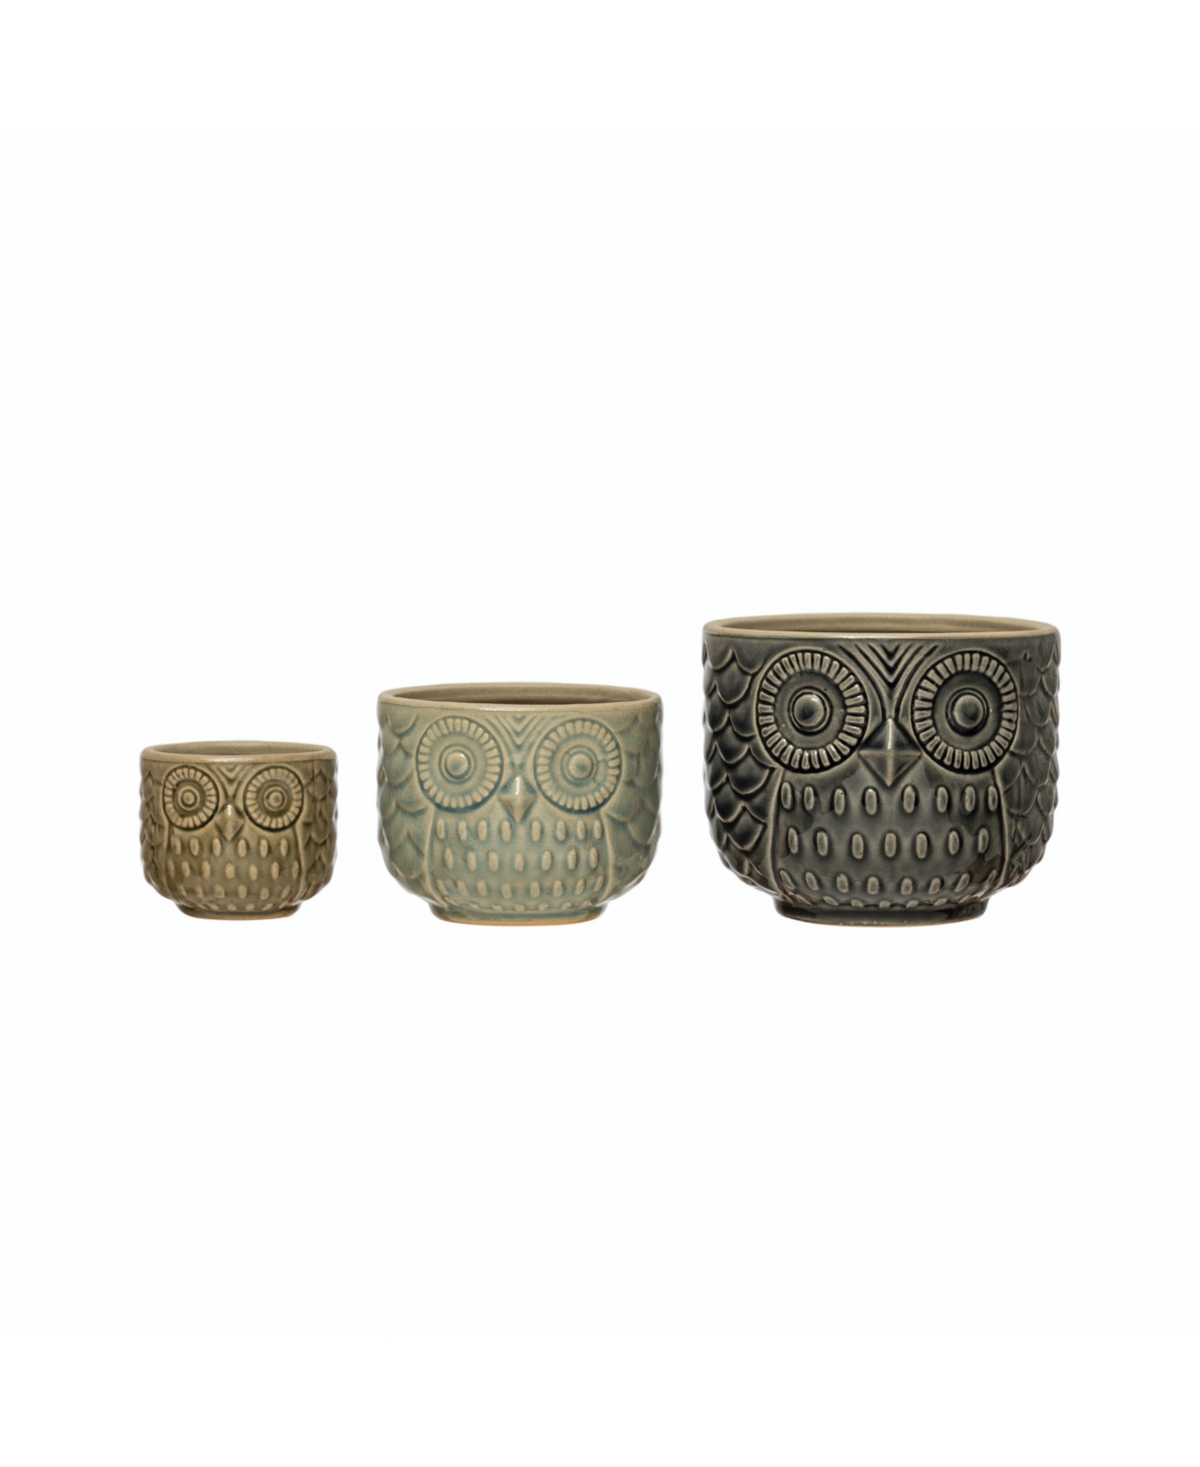 Decorative Stoneware Owl Containers - Multicolored